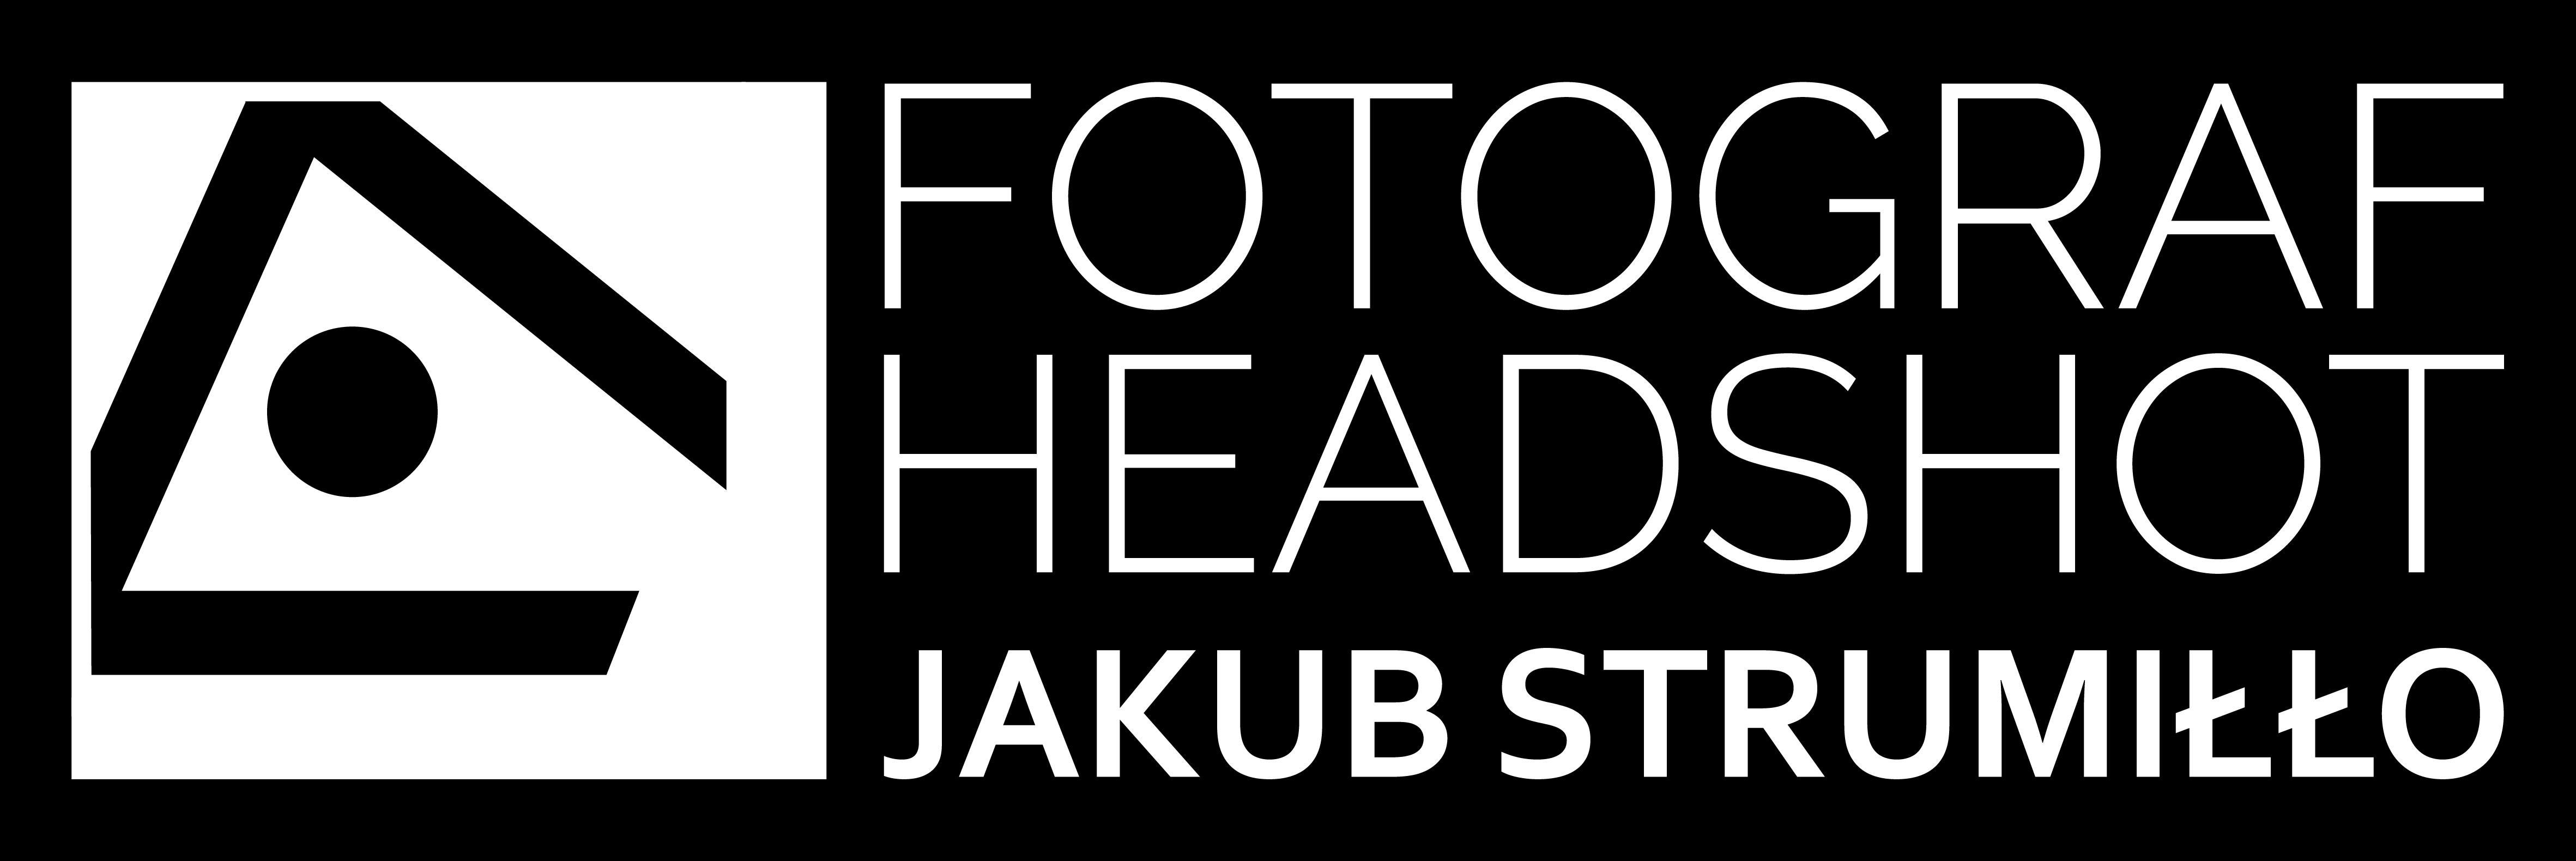 Fotograf Headshot - Jakub Strumiłło Logo